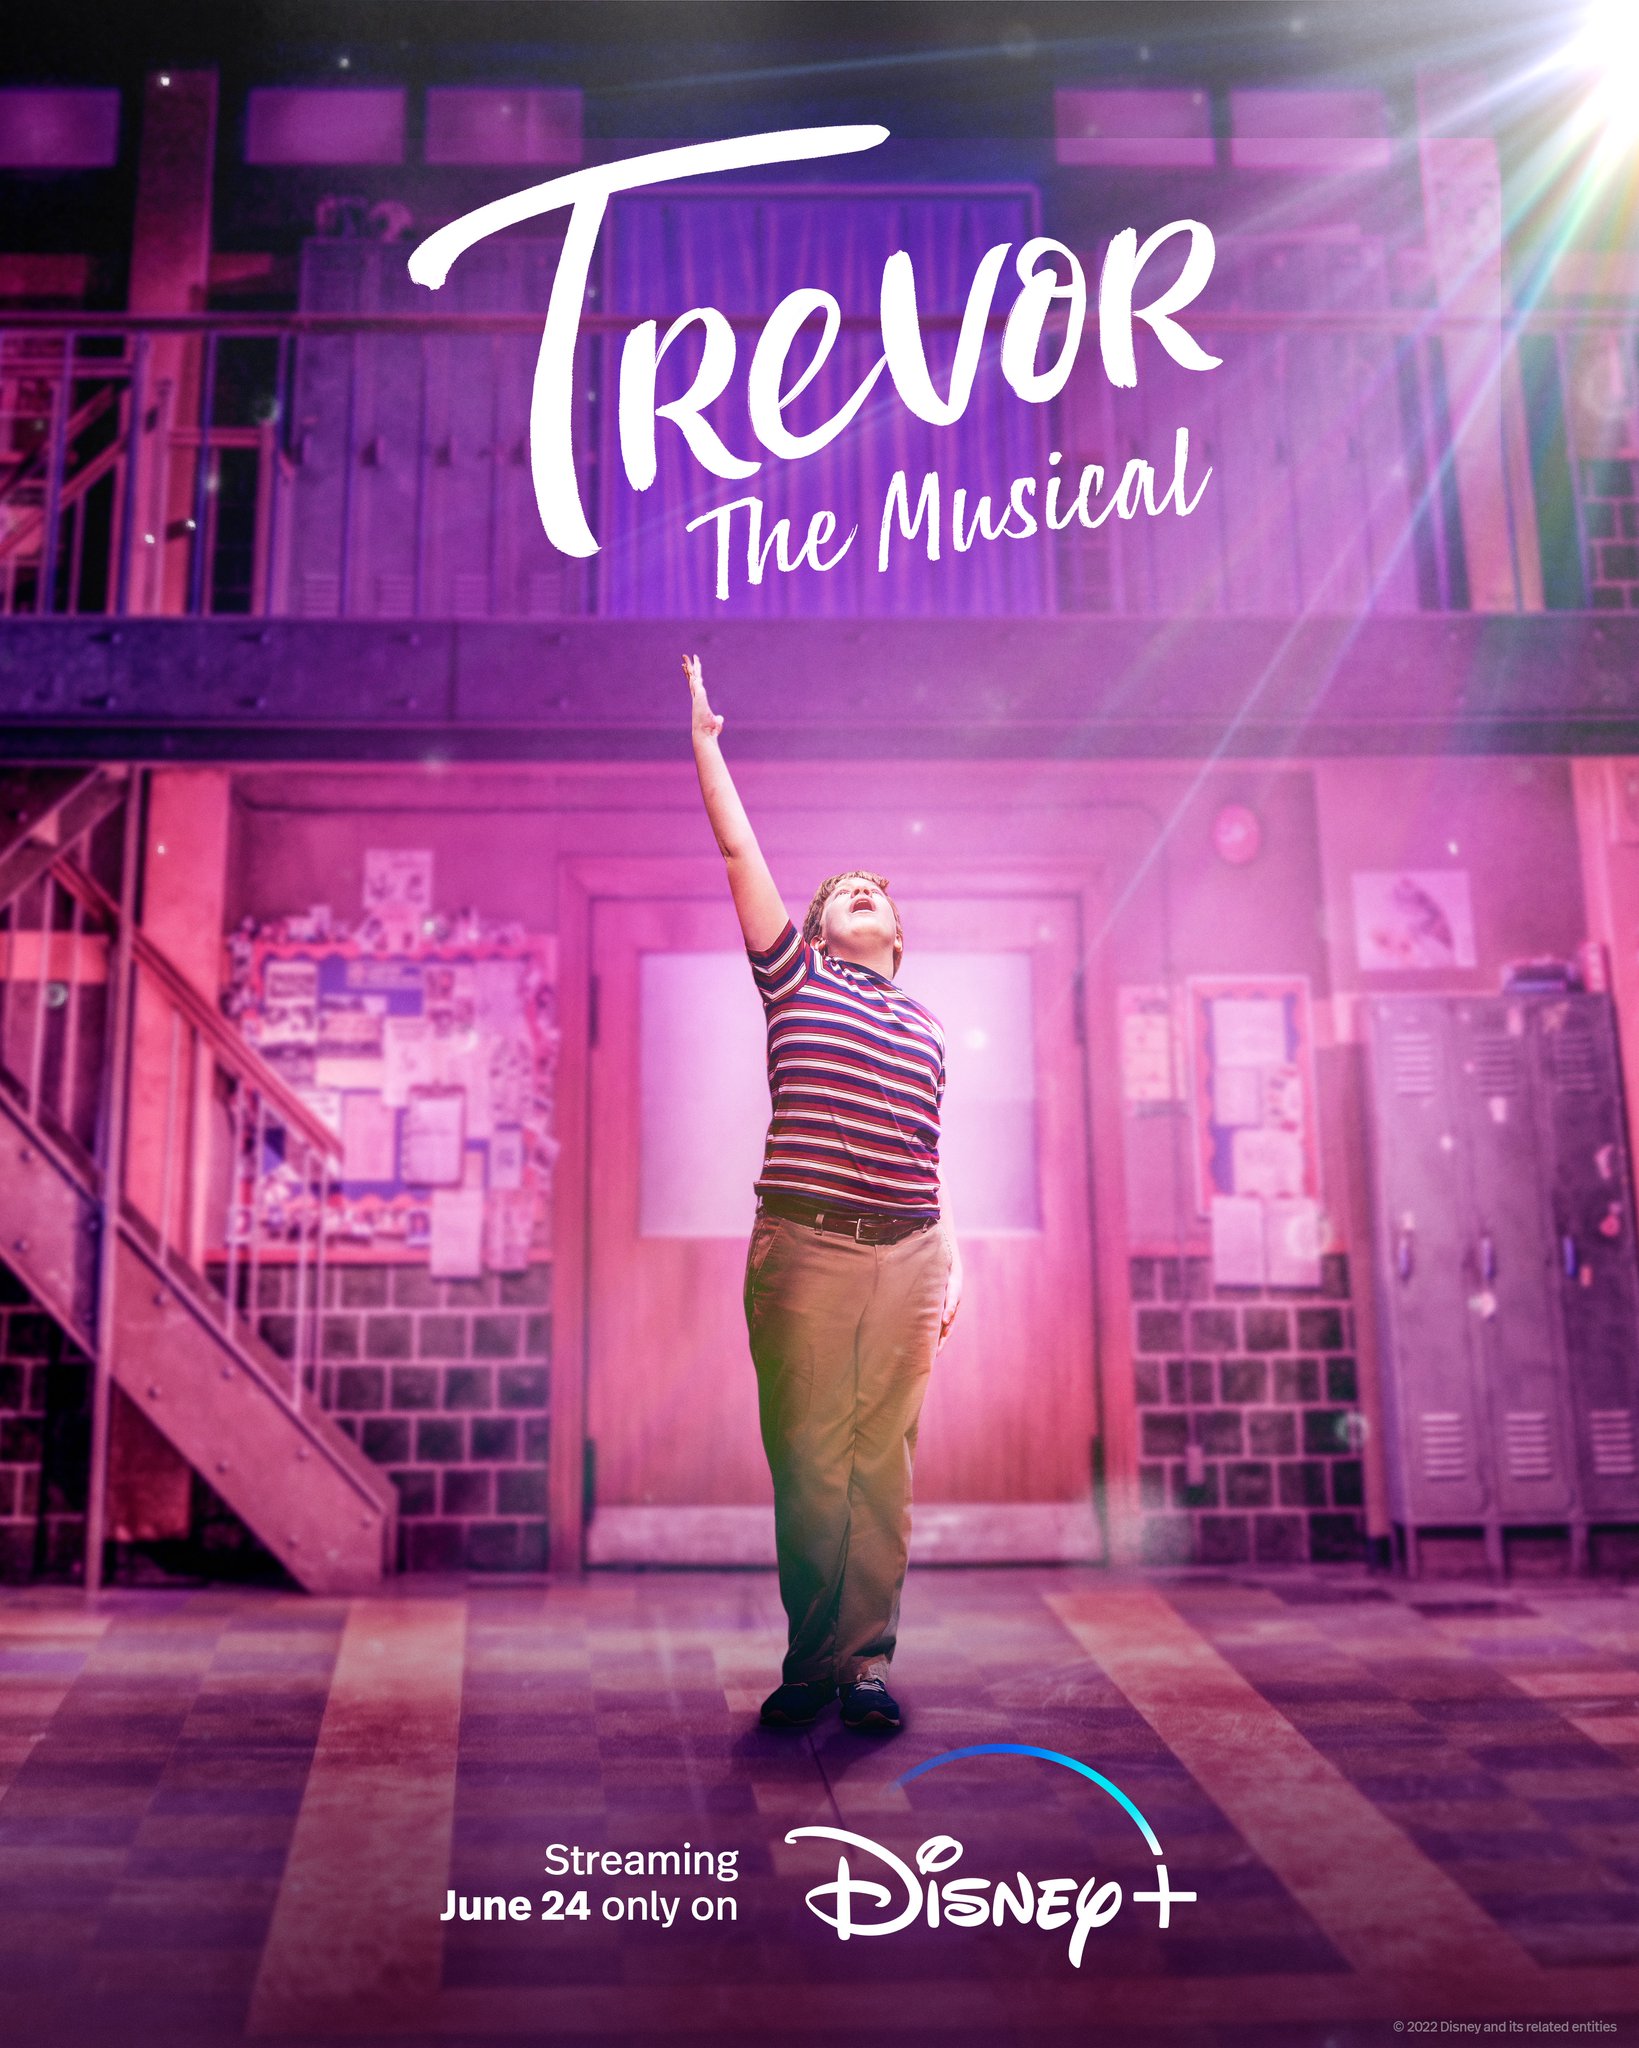 Nonton film Trevor: The Musical layarkaca21 indoxx1 ganool online streaming terbaru